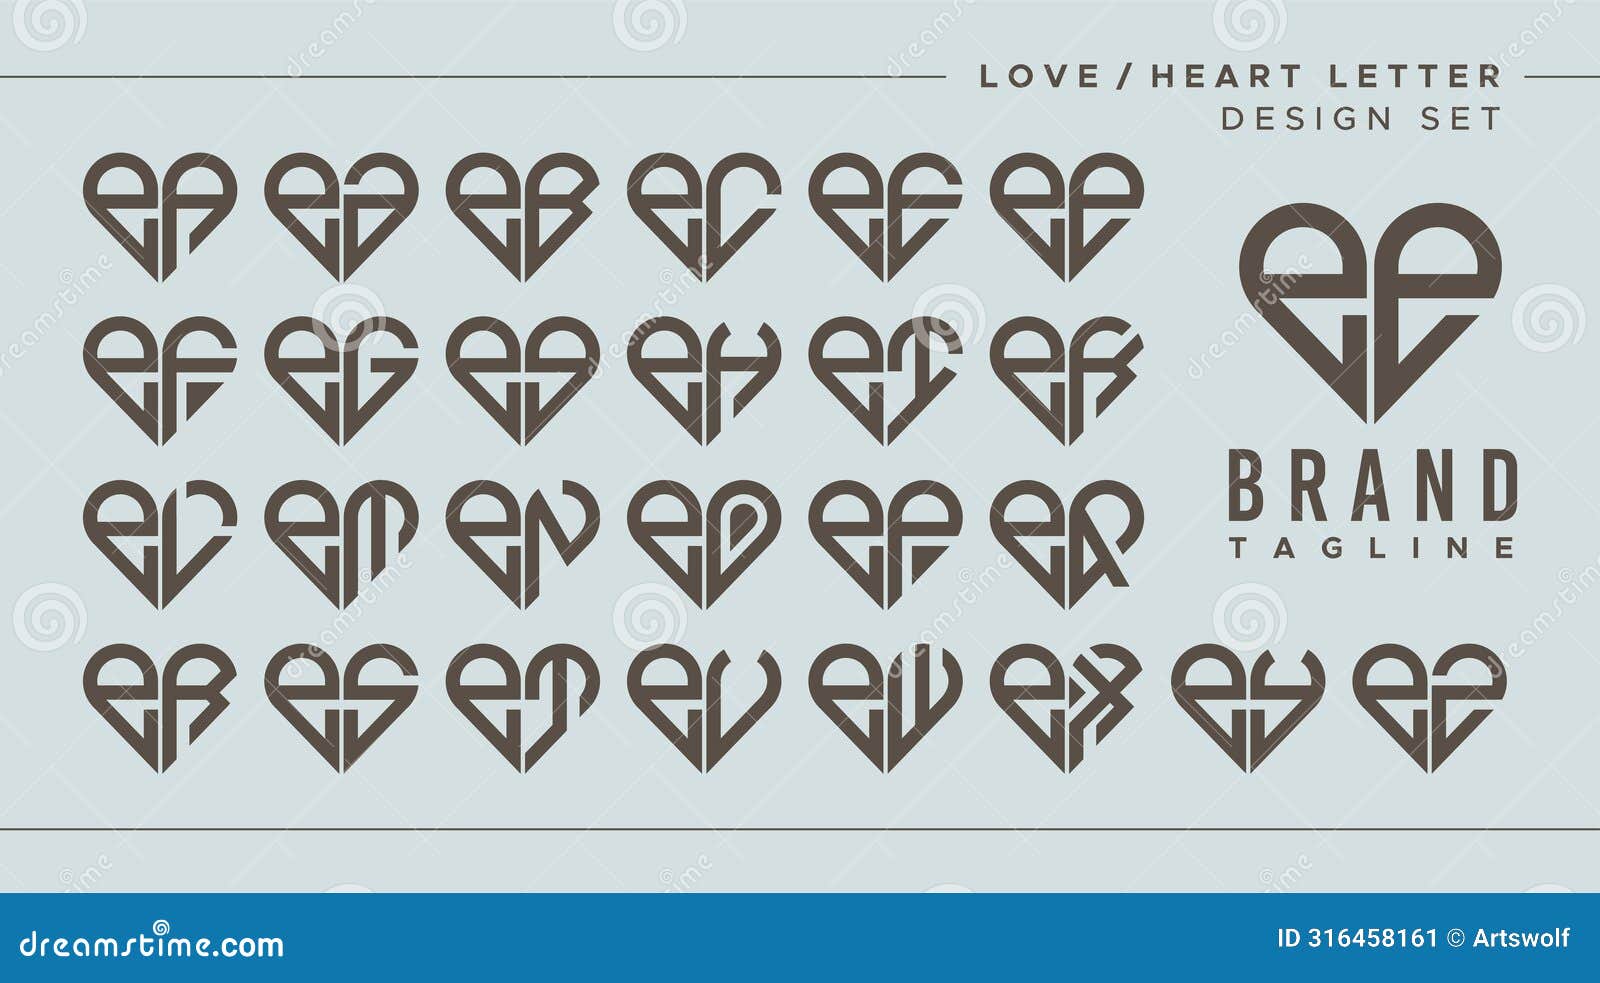 set of love heart lowercase letter e ee logo 